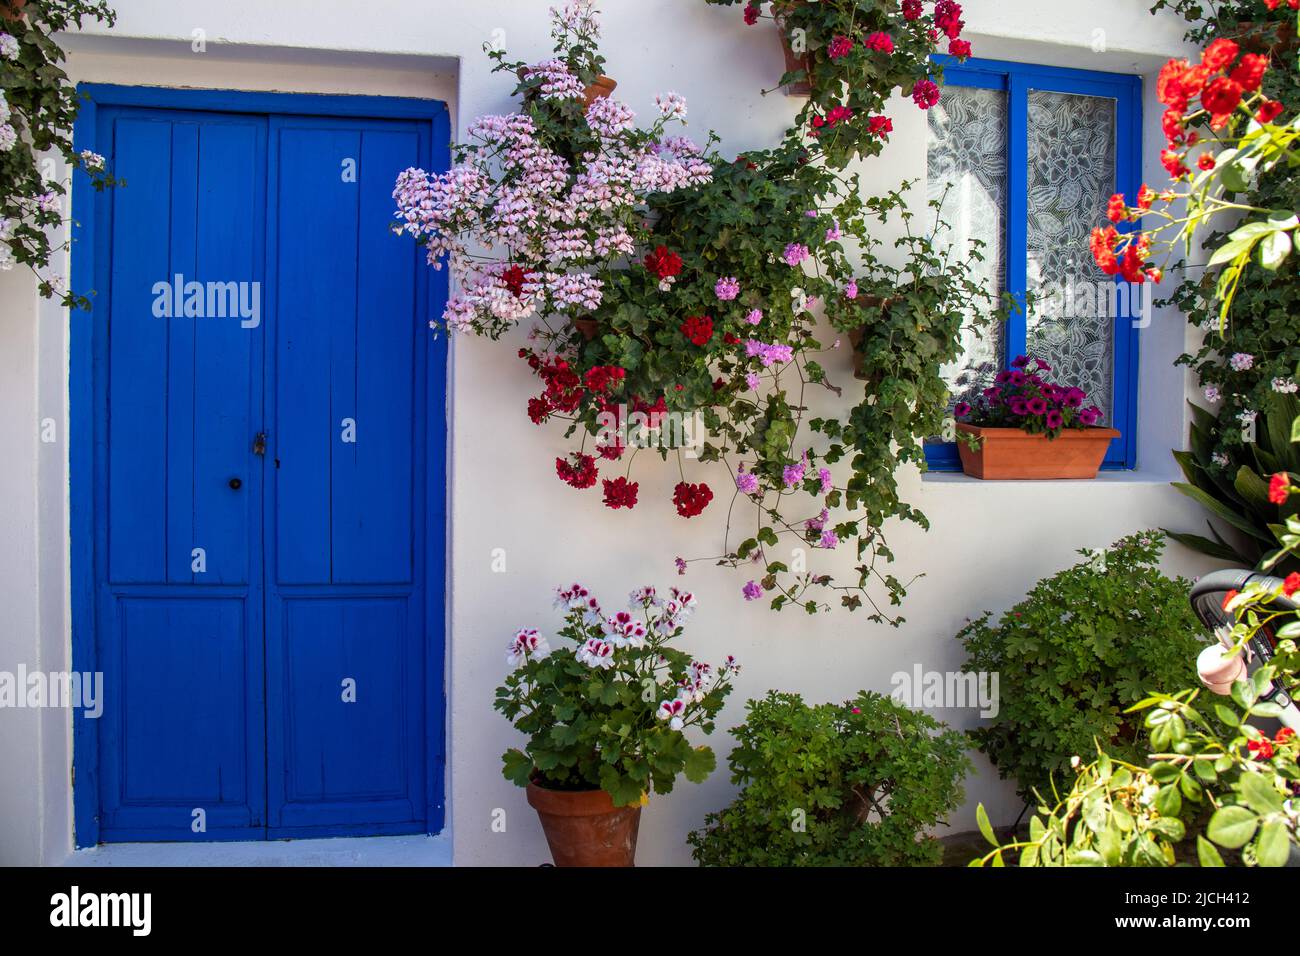 Patio lleno de flores en primavera. Paredes blancas y puertas, ventanas y macetas en color azul. Córdoba, España. Stock Photo